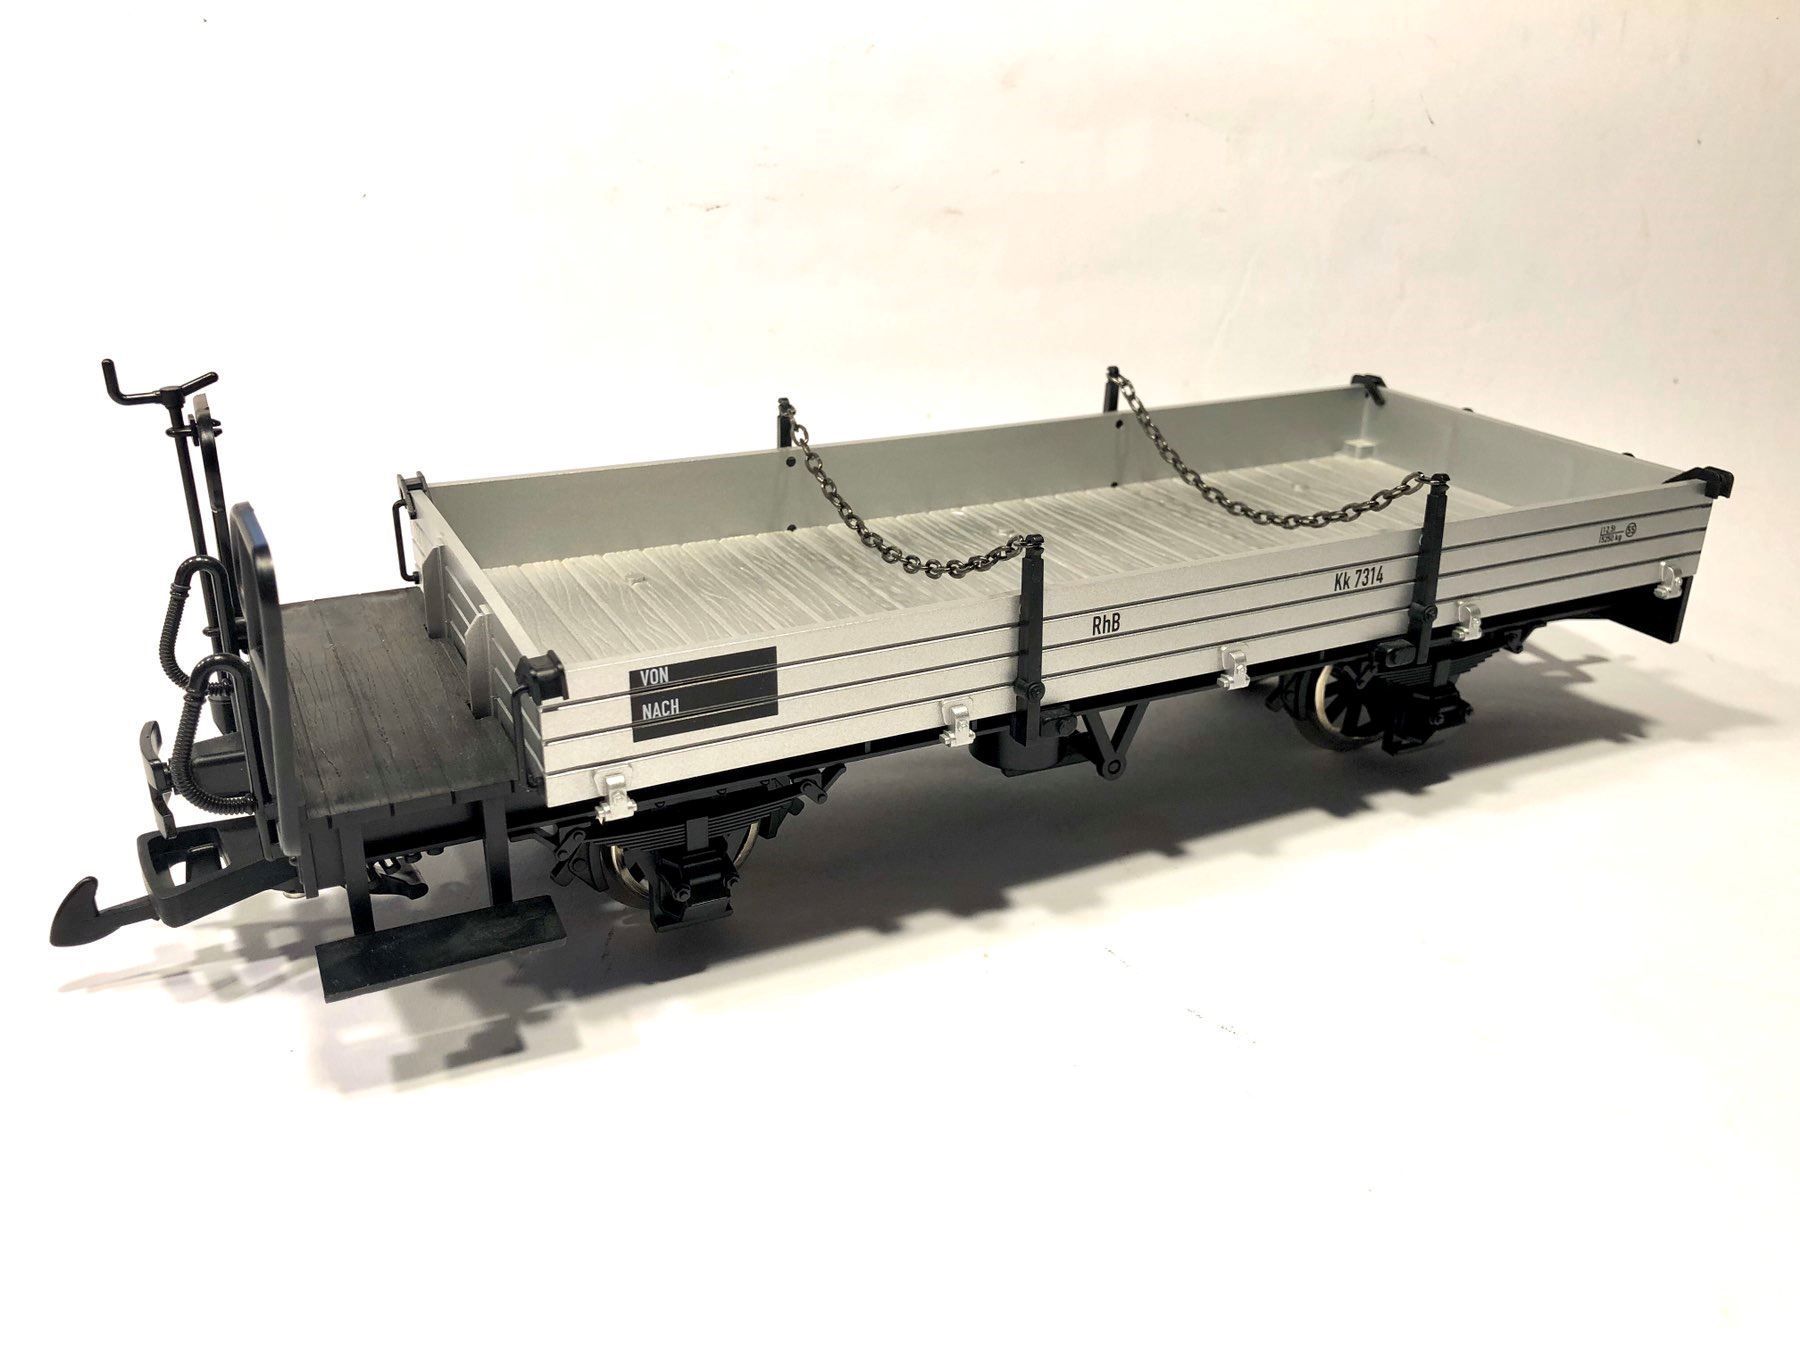  LGB - ref.40090 - Vagón borde bajo gris de la RhB Kk7314 